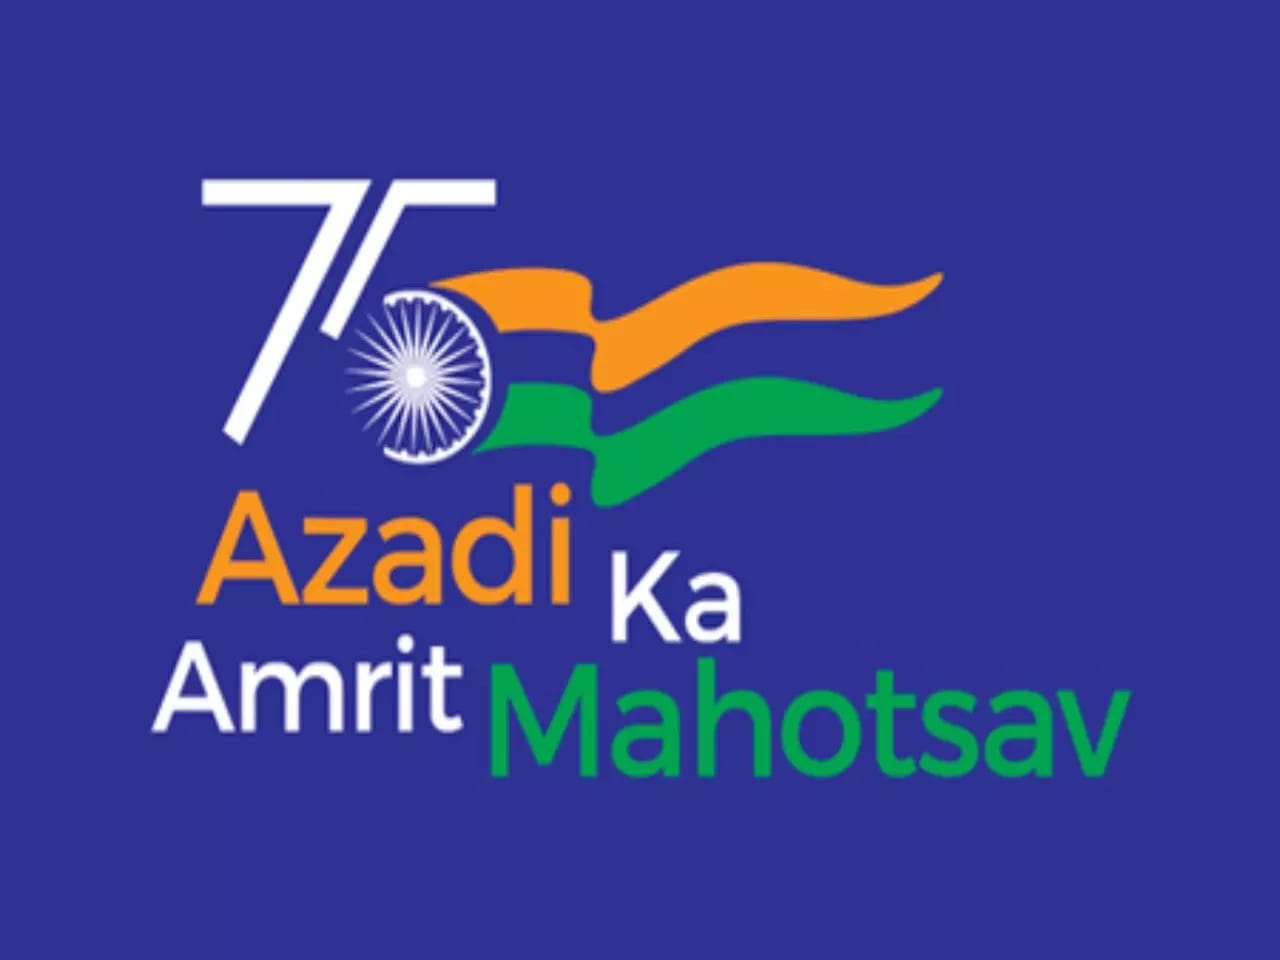 Azadi ka Amrit Mahotsav & 15 Auguest 2022